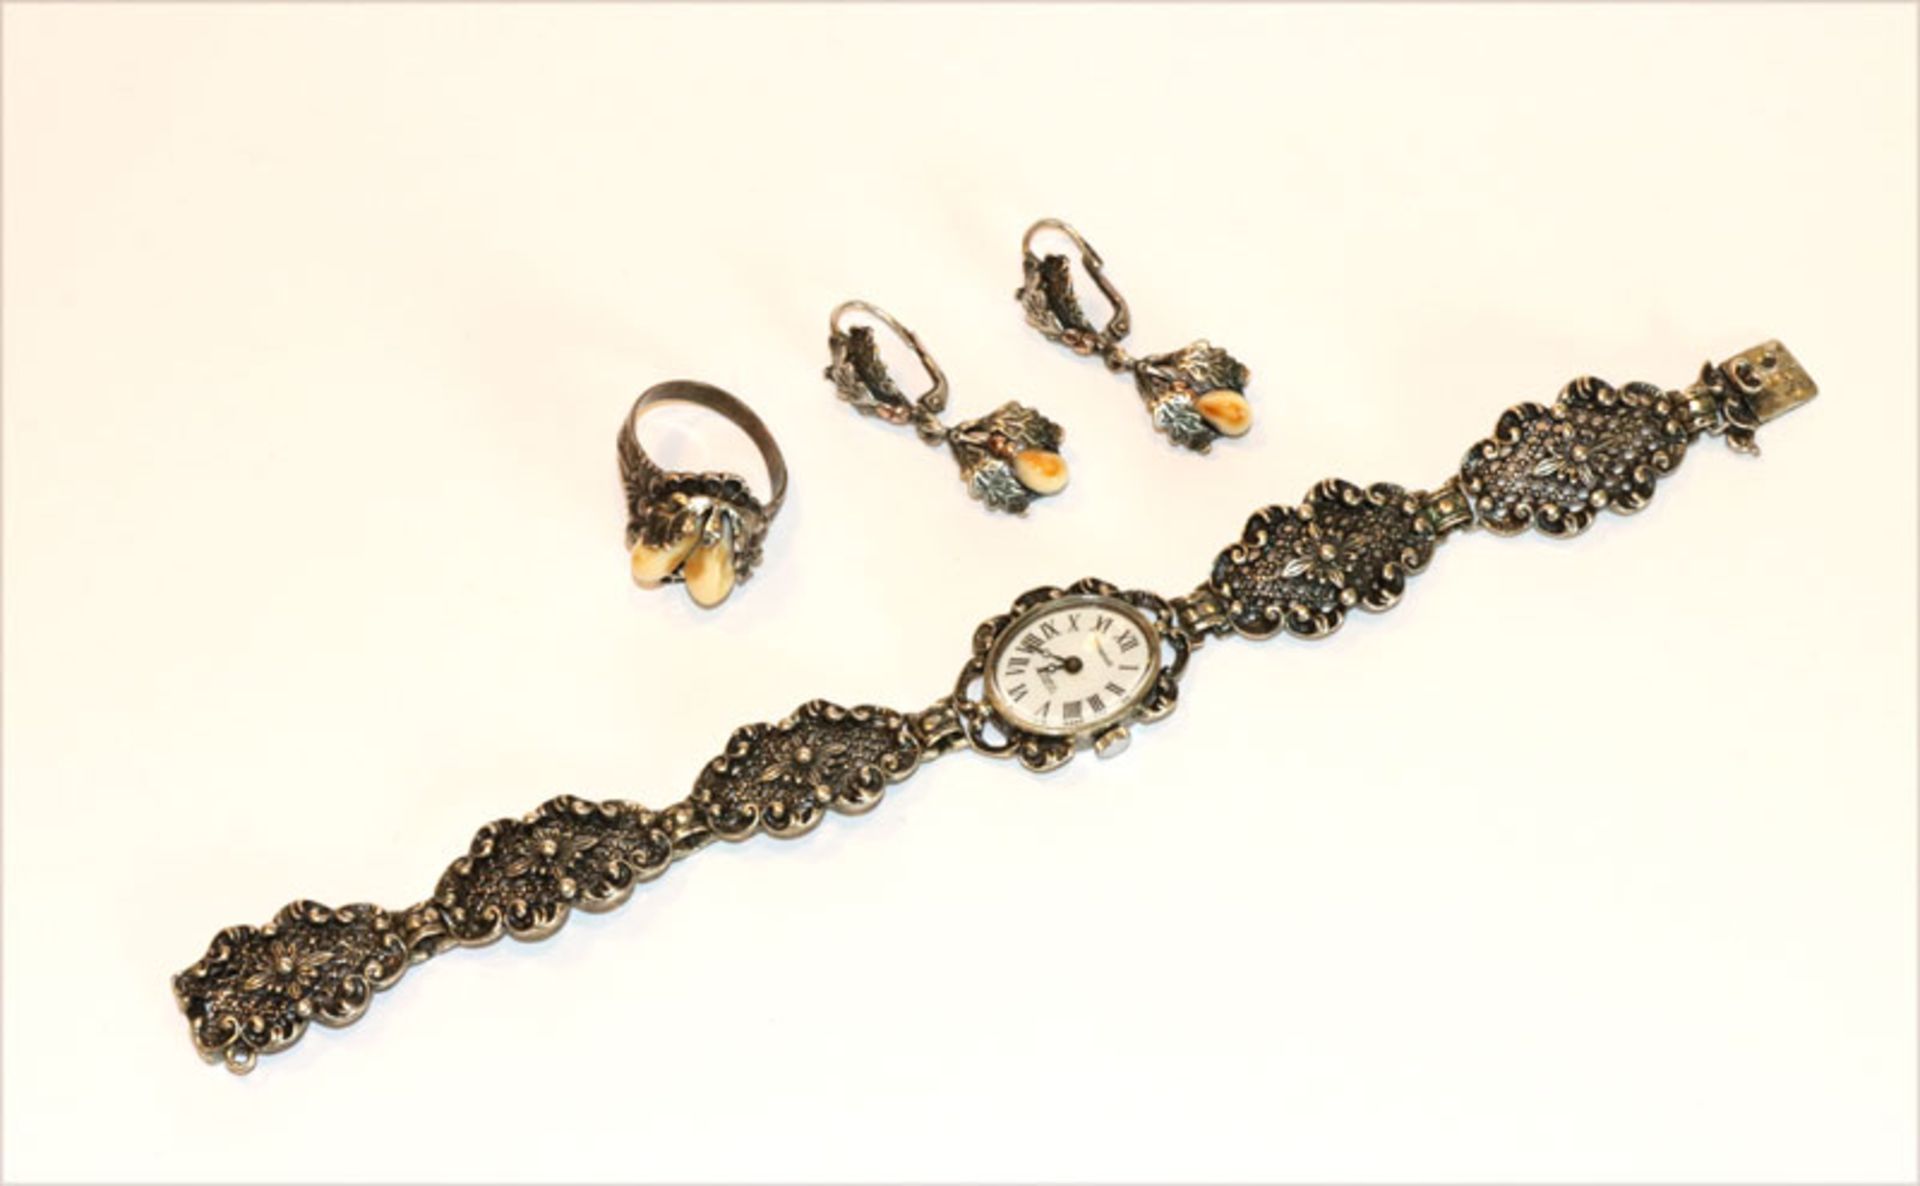 Silber Trachtenschmuck: Mirabell Armbanduhr, L 19,5 cm, Paar Ohrhänger mit Grandeln, L 3,5 cm, und